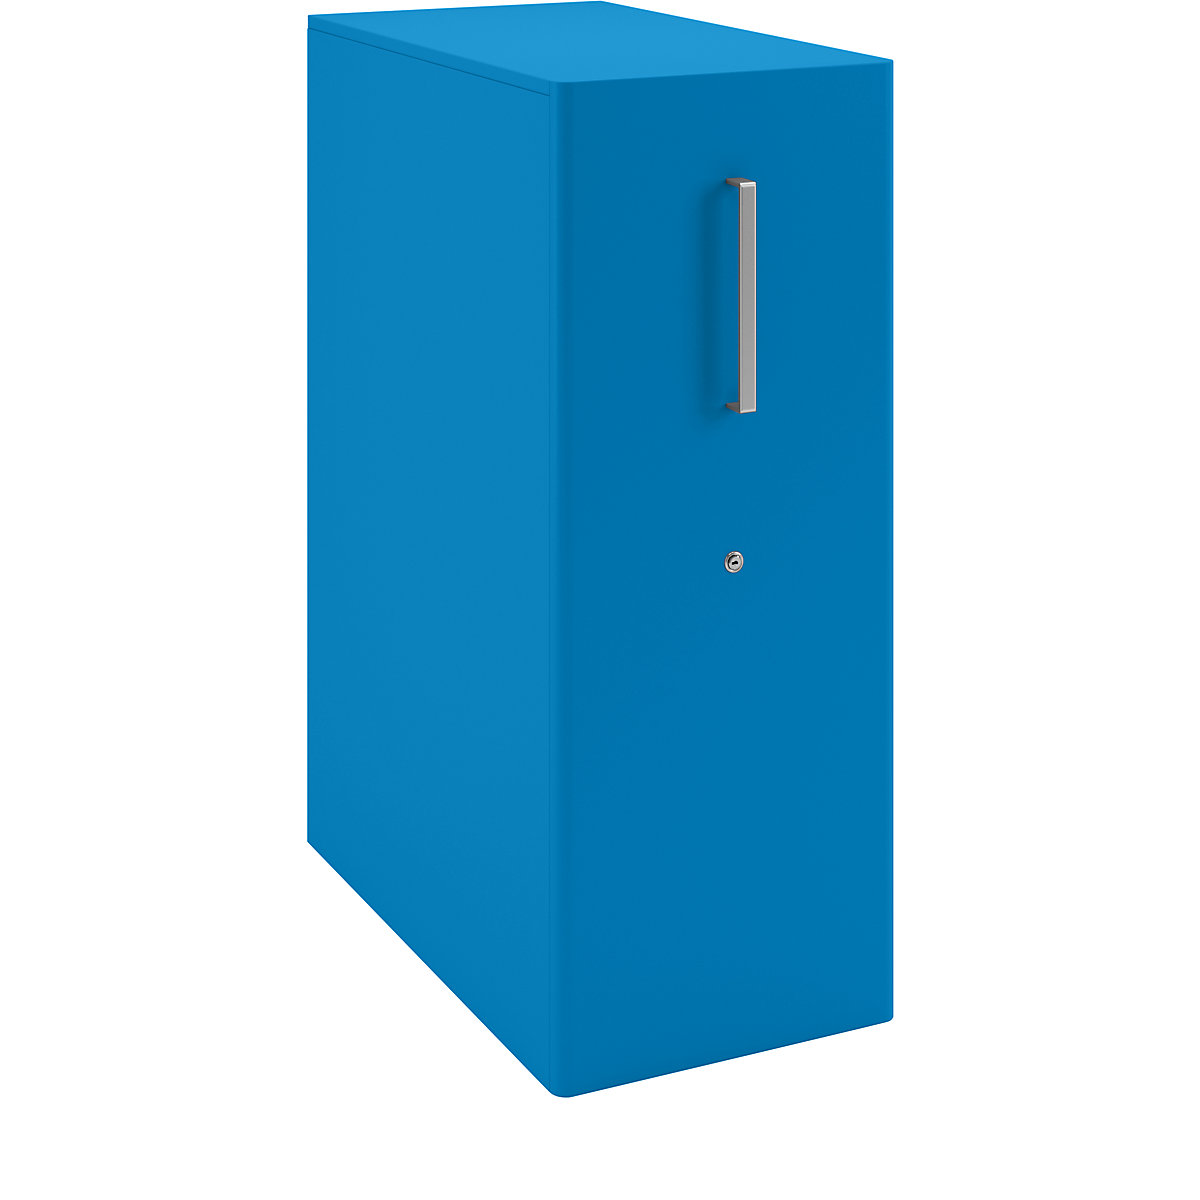 Assistenzmöbel Tower™ 4, mit Top BISLEY, linksstehend, 4 Fachböden, blau-21